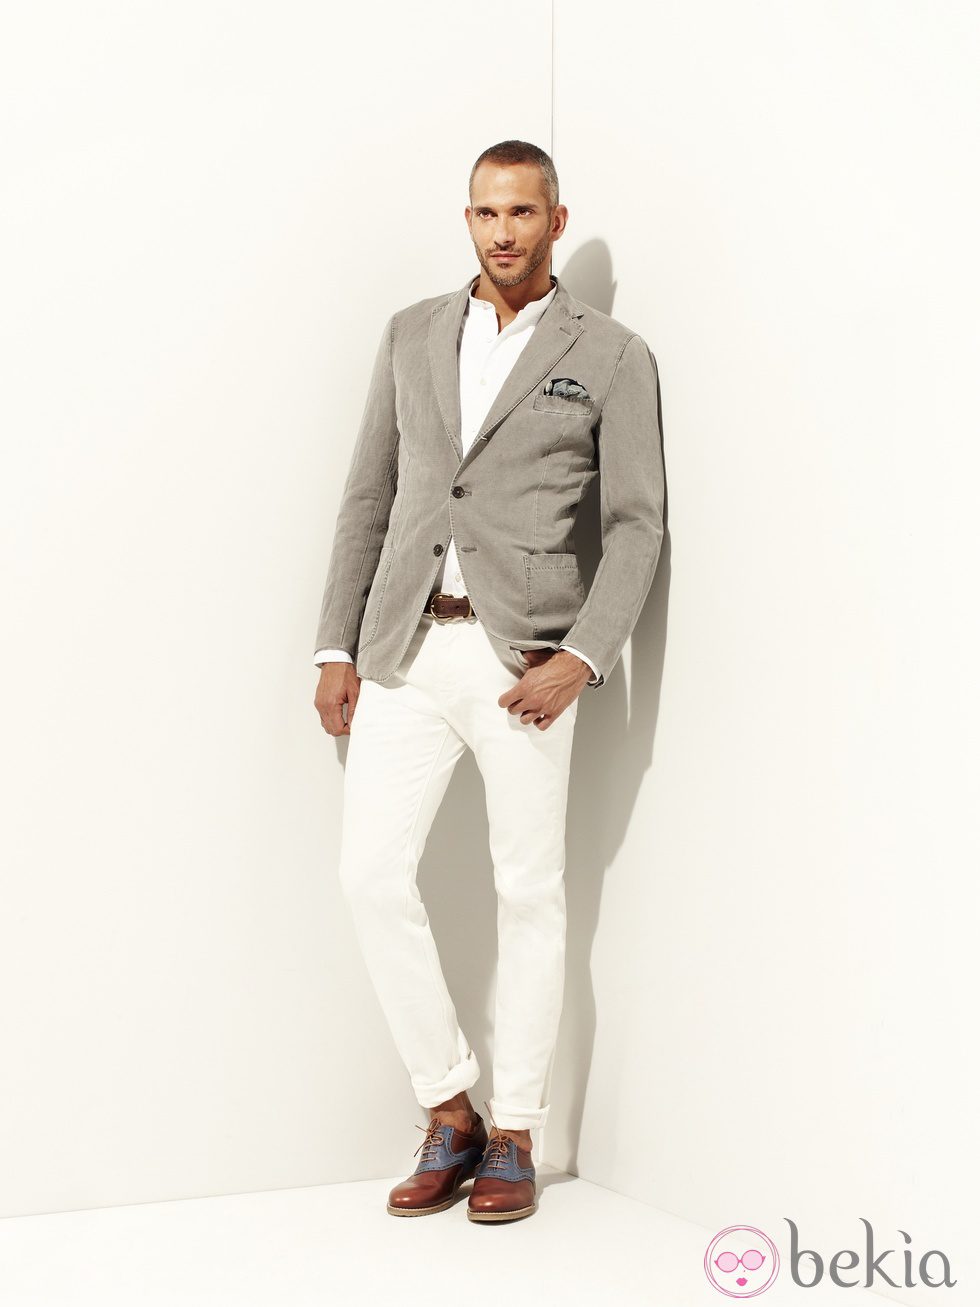 pantalón blanco y americana de la colección verano 2012 de la línea masculina de Pedro del Hierro